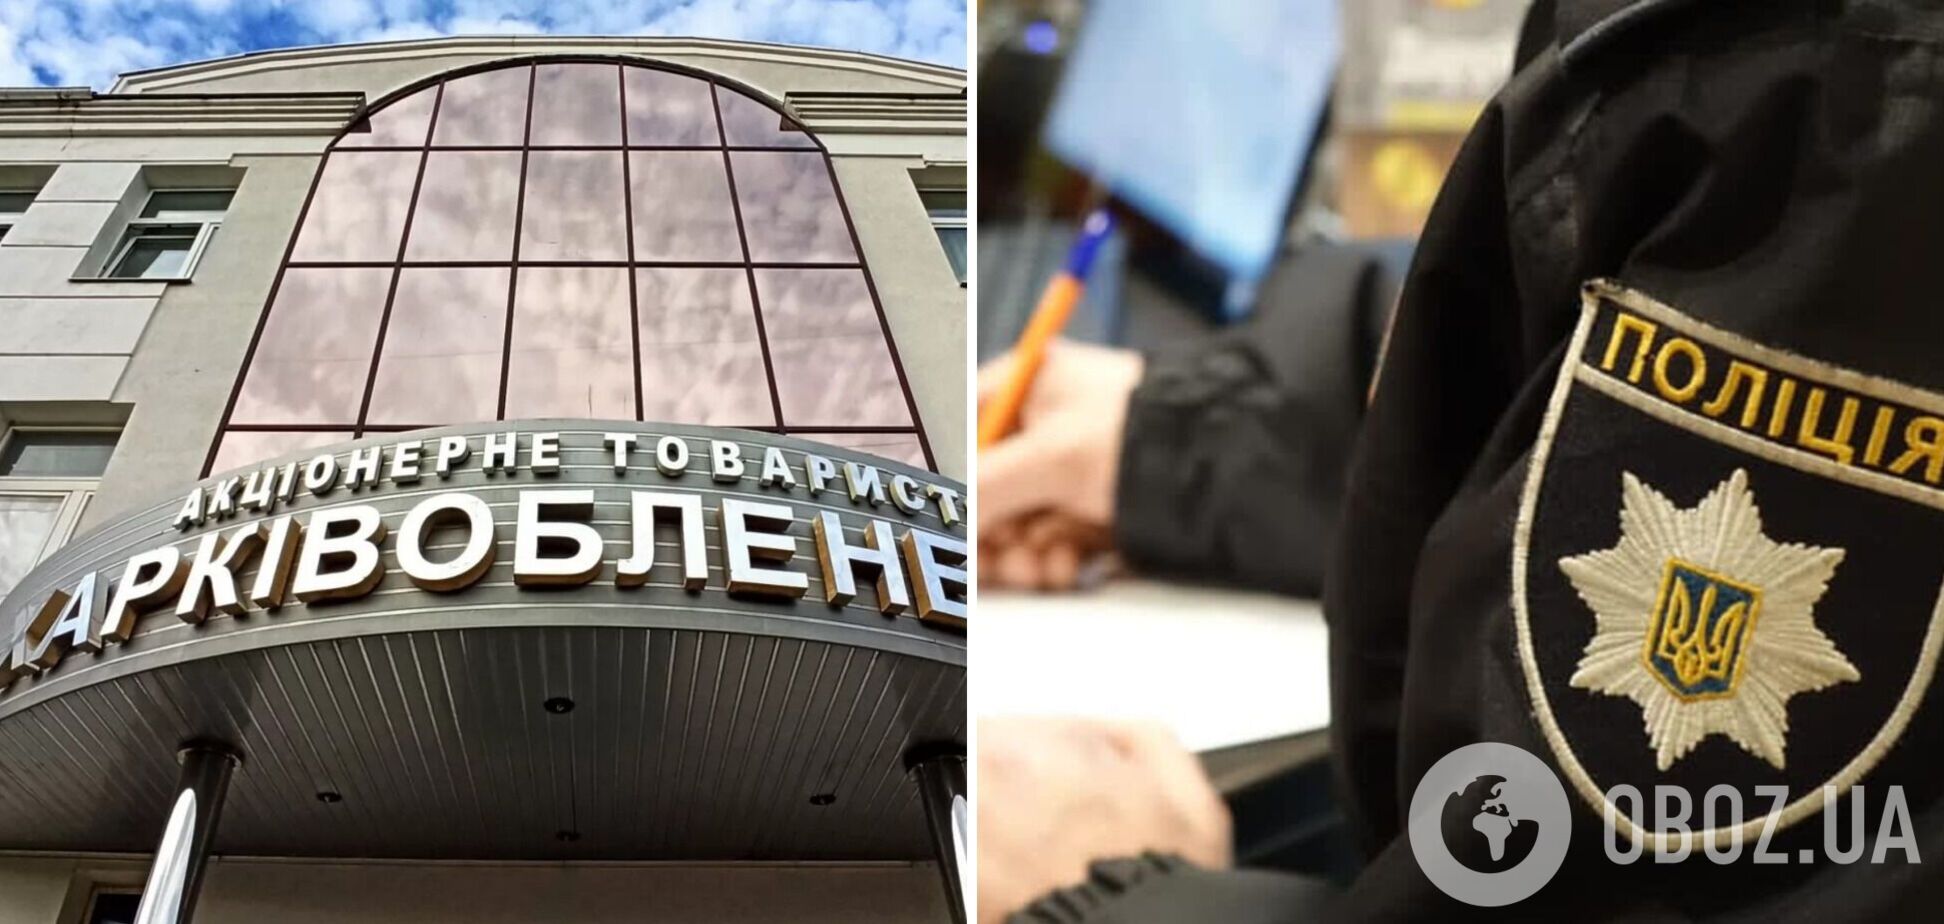 Полиция зарегистрировала дело по фактам злоупотреблений на тендерах 'Харьковоблэнерго' на 111,6 млн гривен